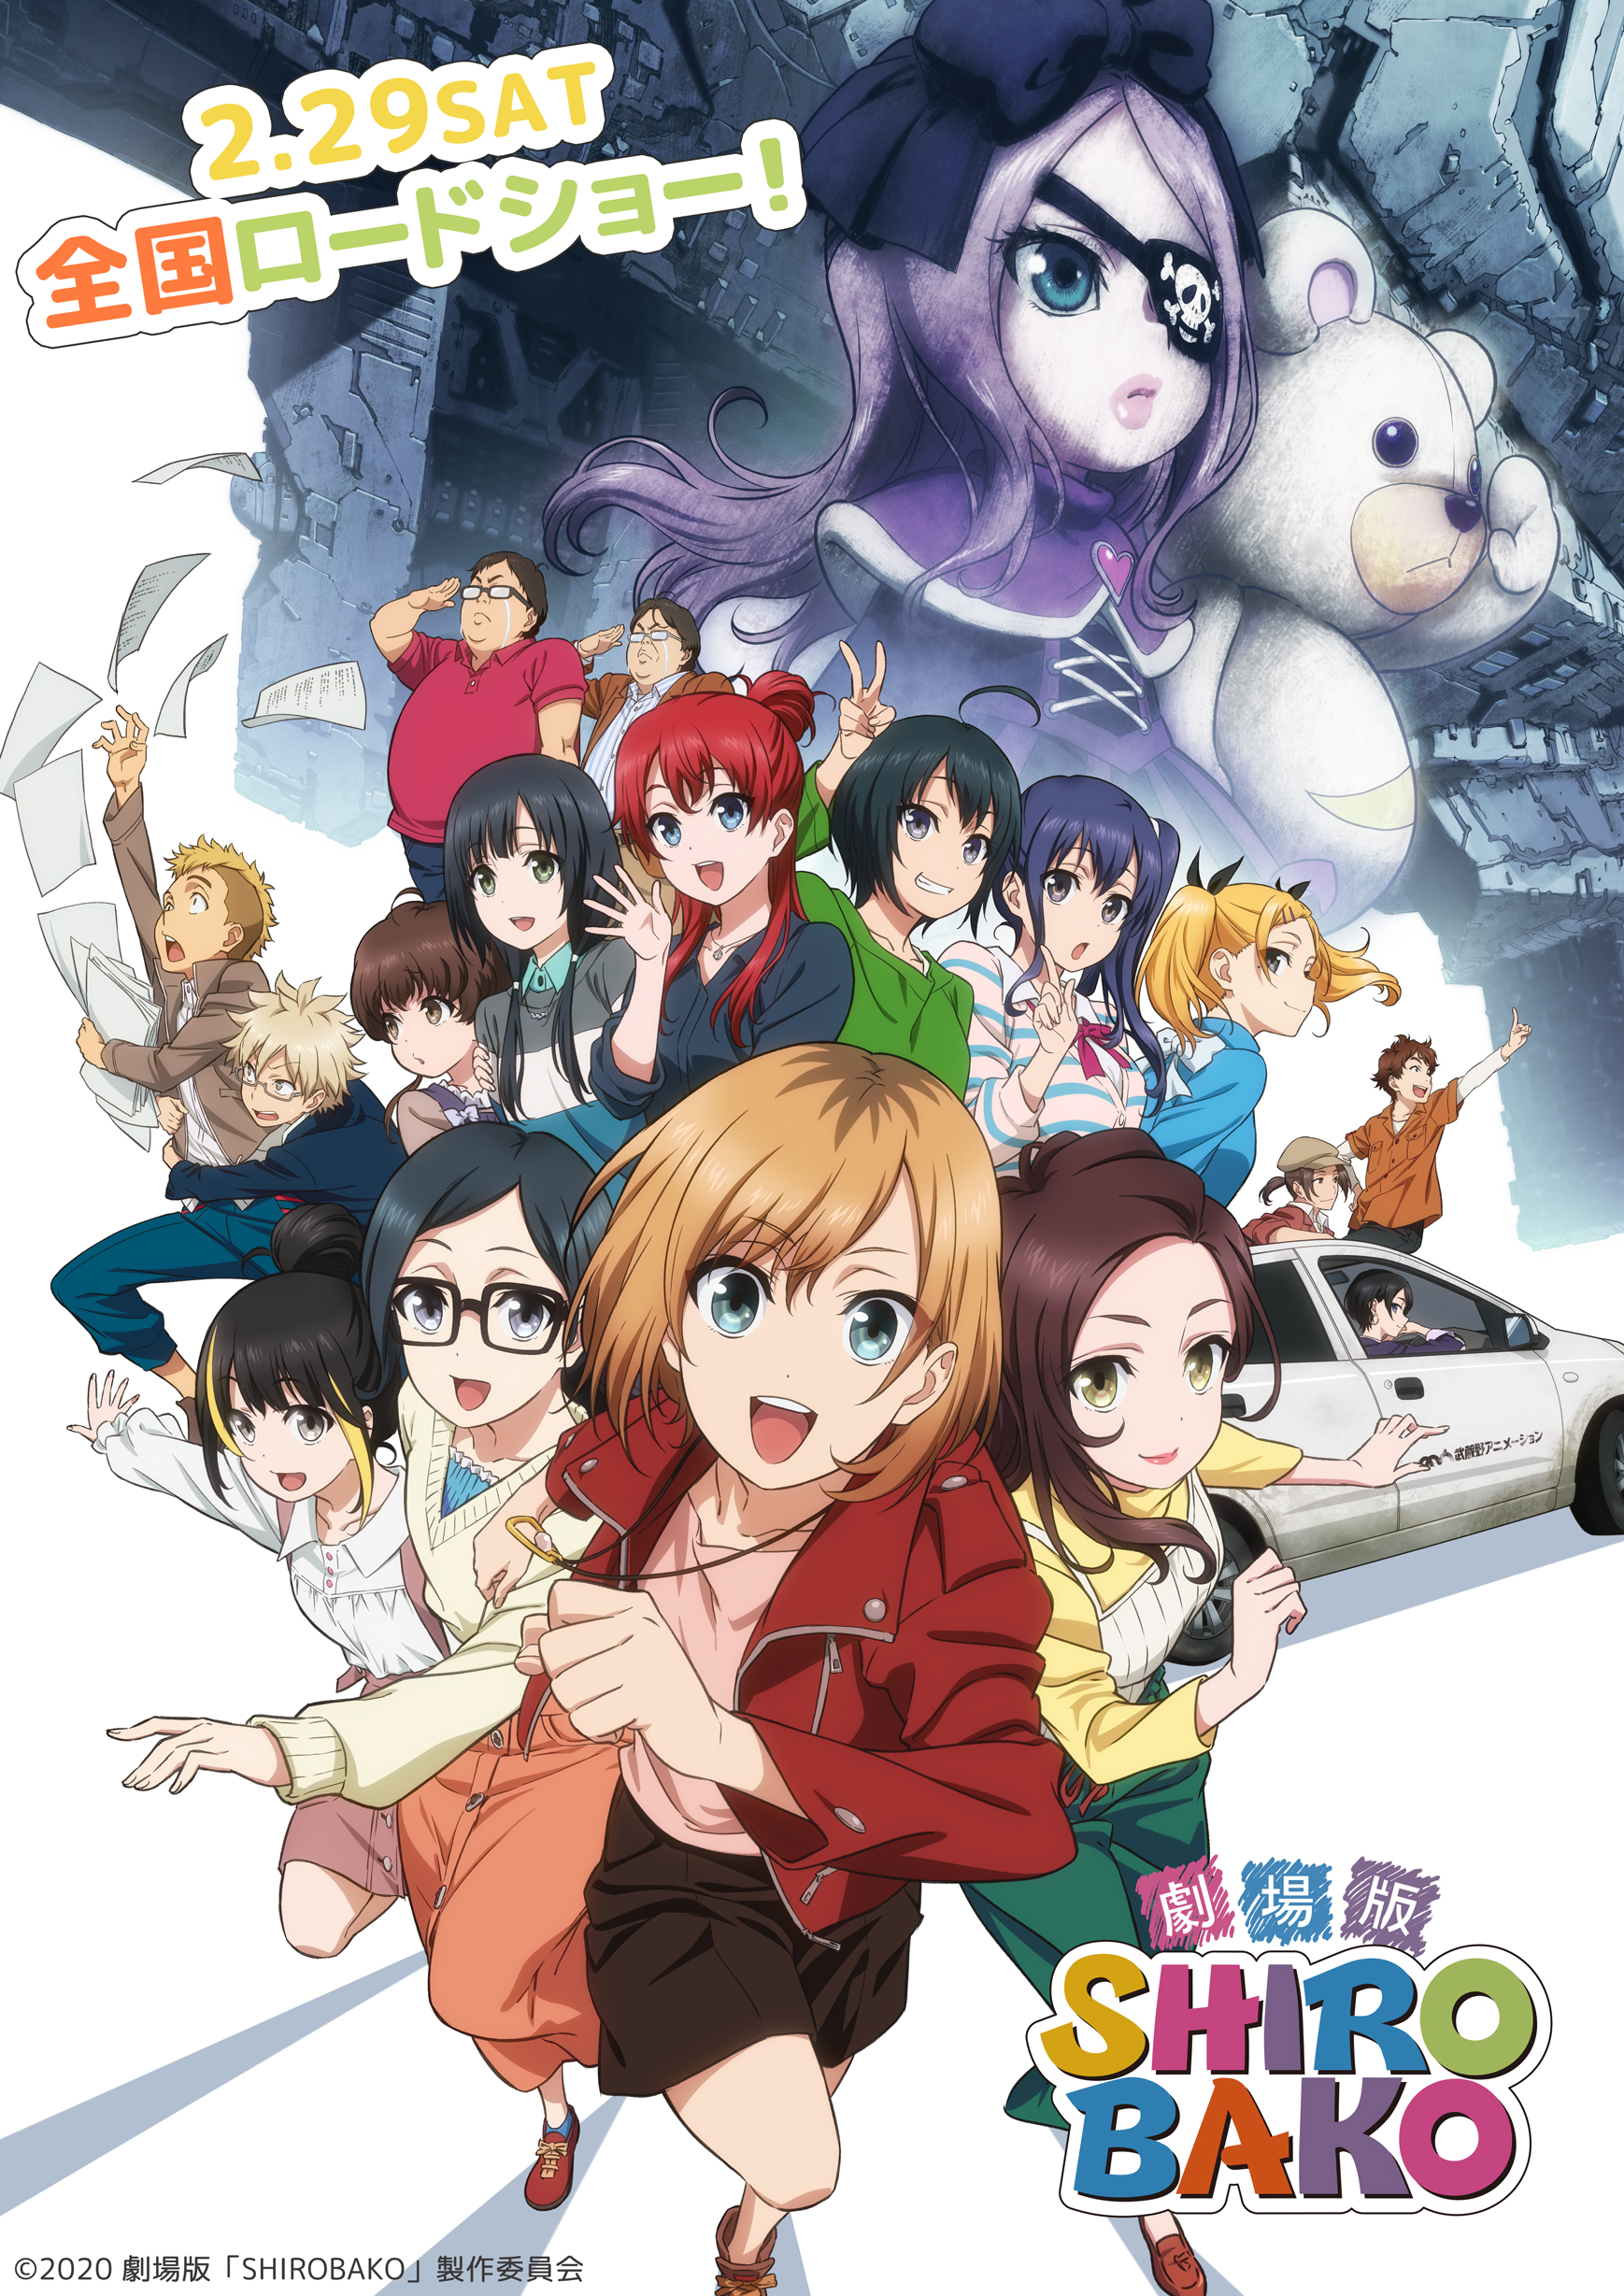 Majo-Minarai-wo-Sagashite Anime Movie 2020